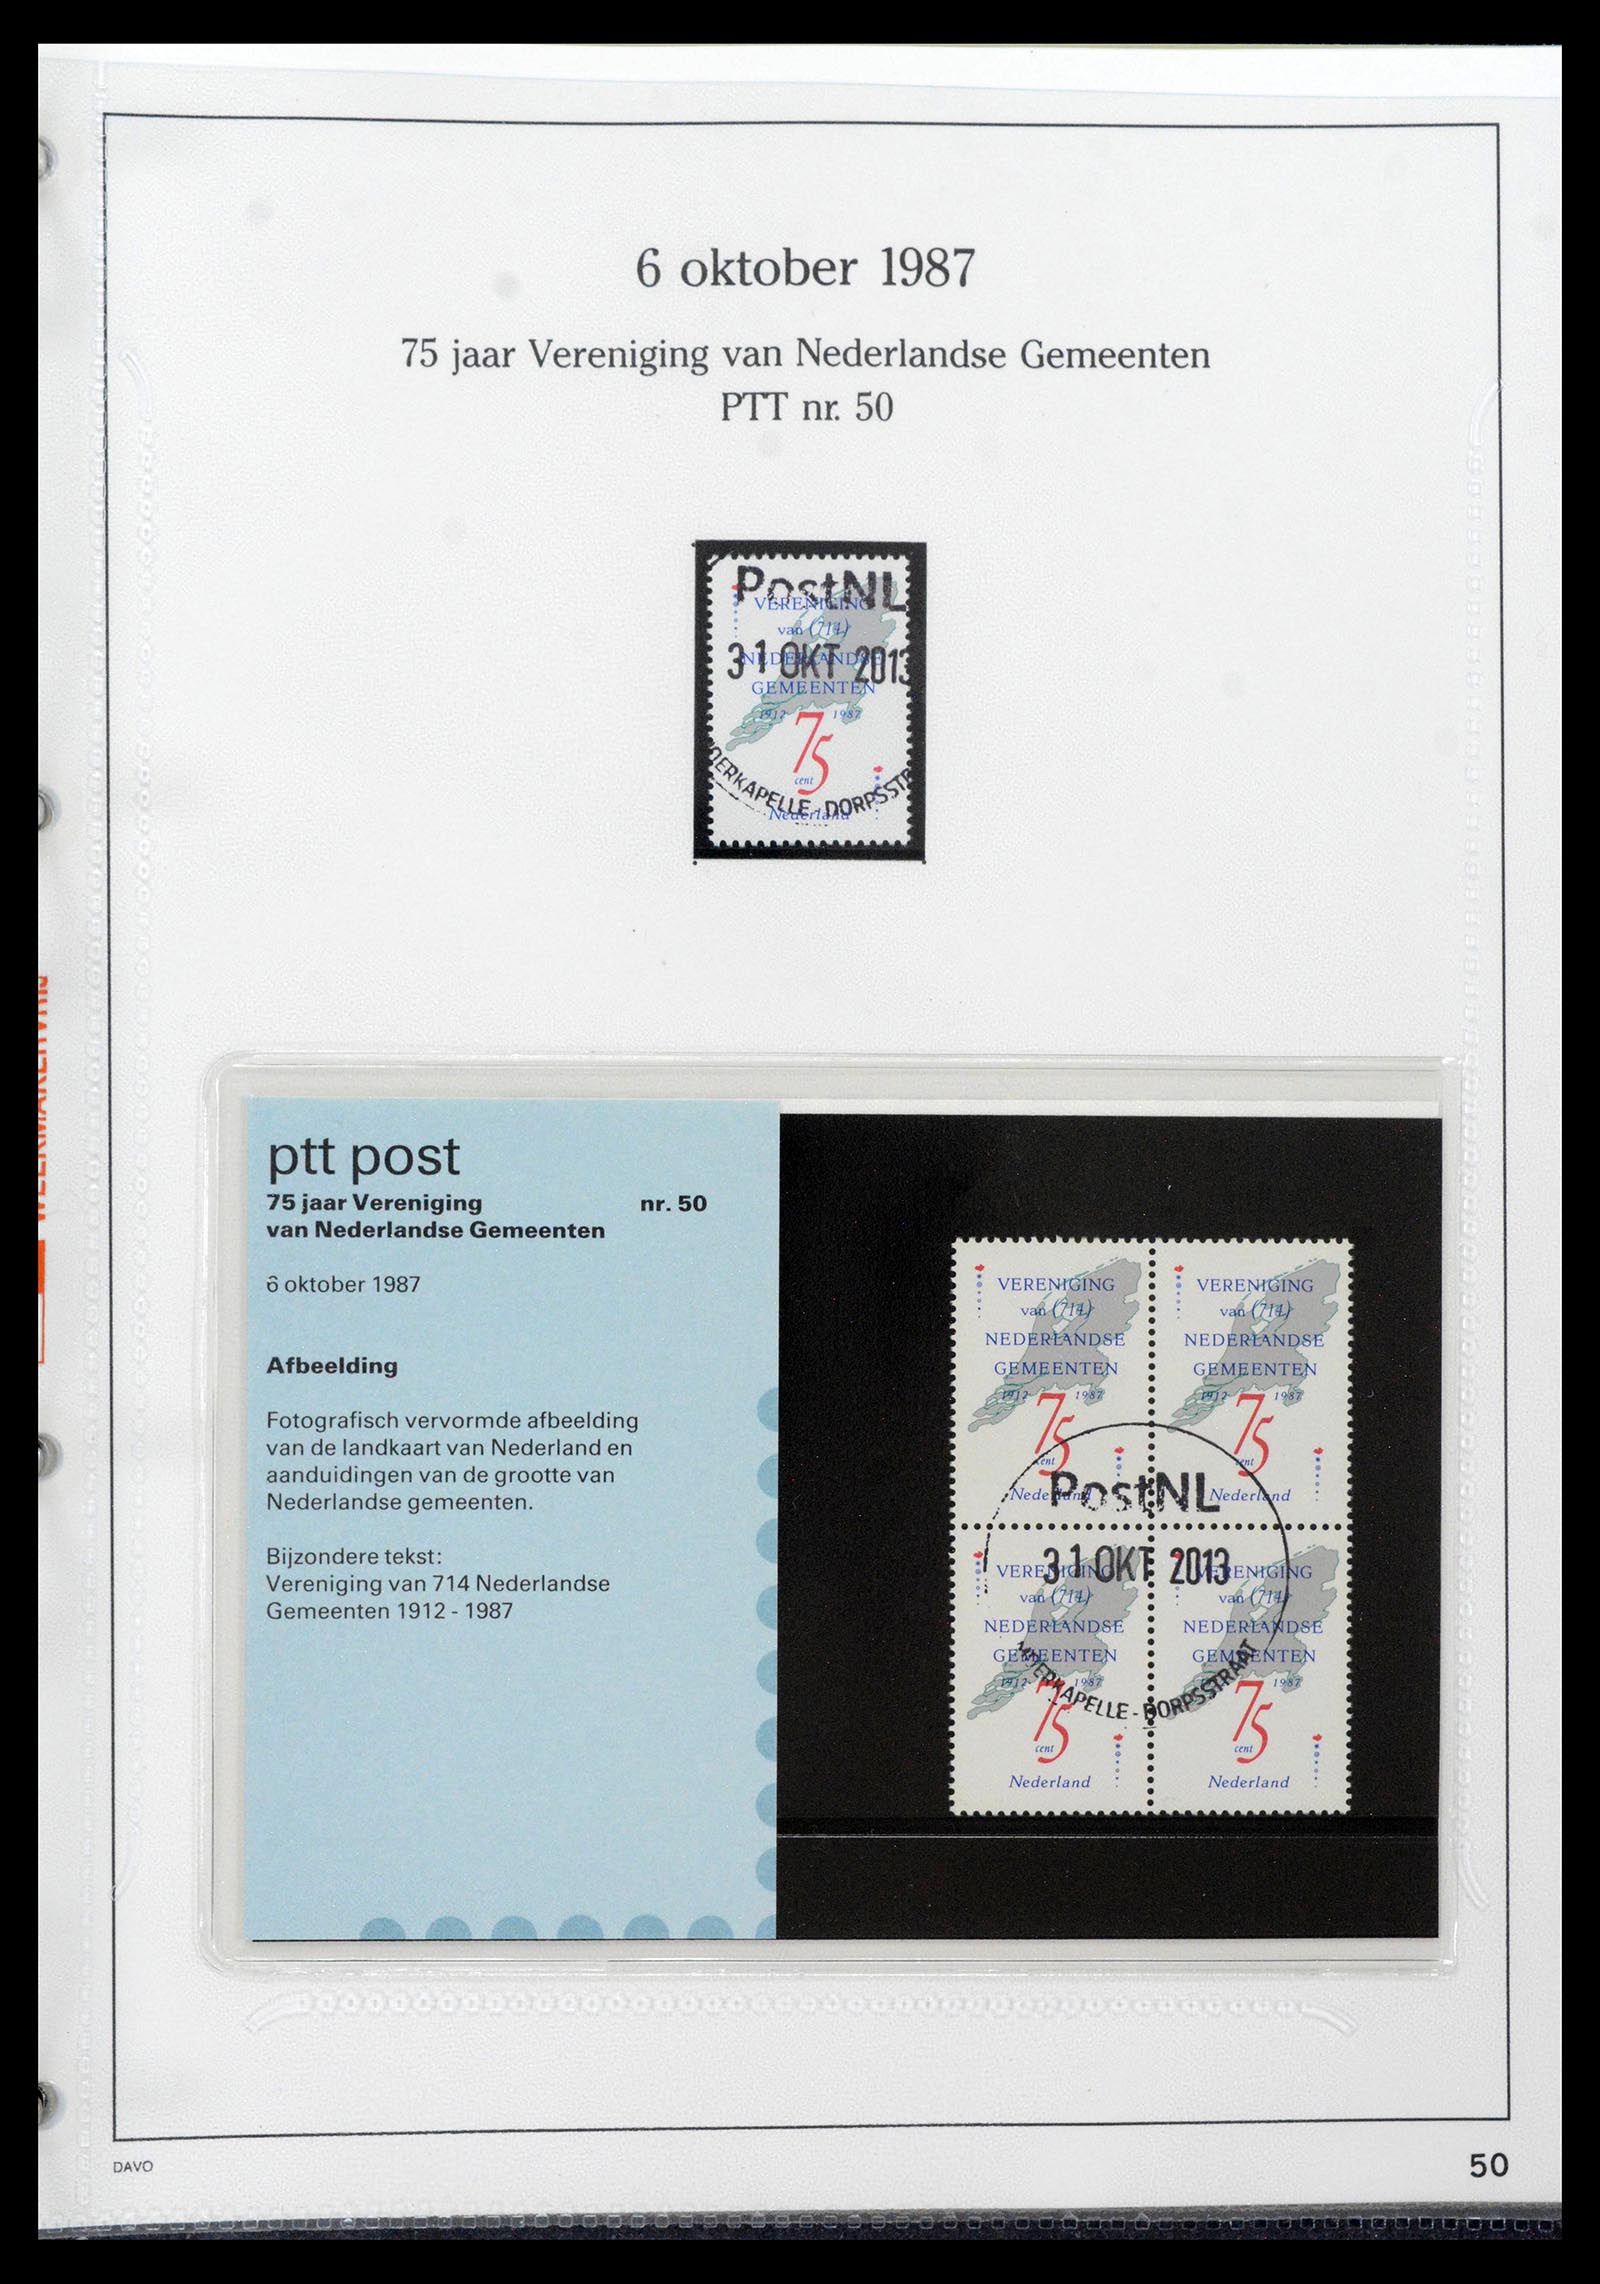 39121 0050 - Stamp collection 39121 Netherlands presentationpacks 1982-2001.